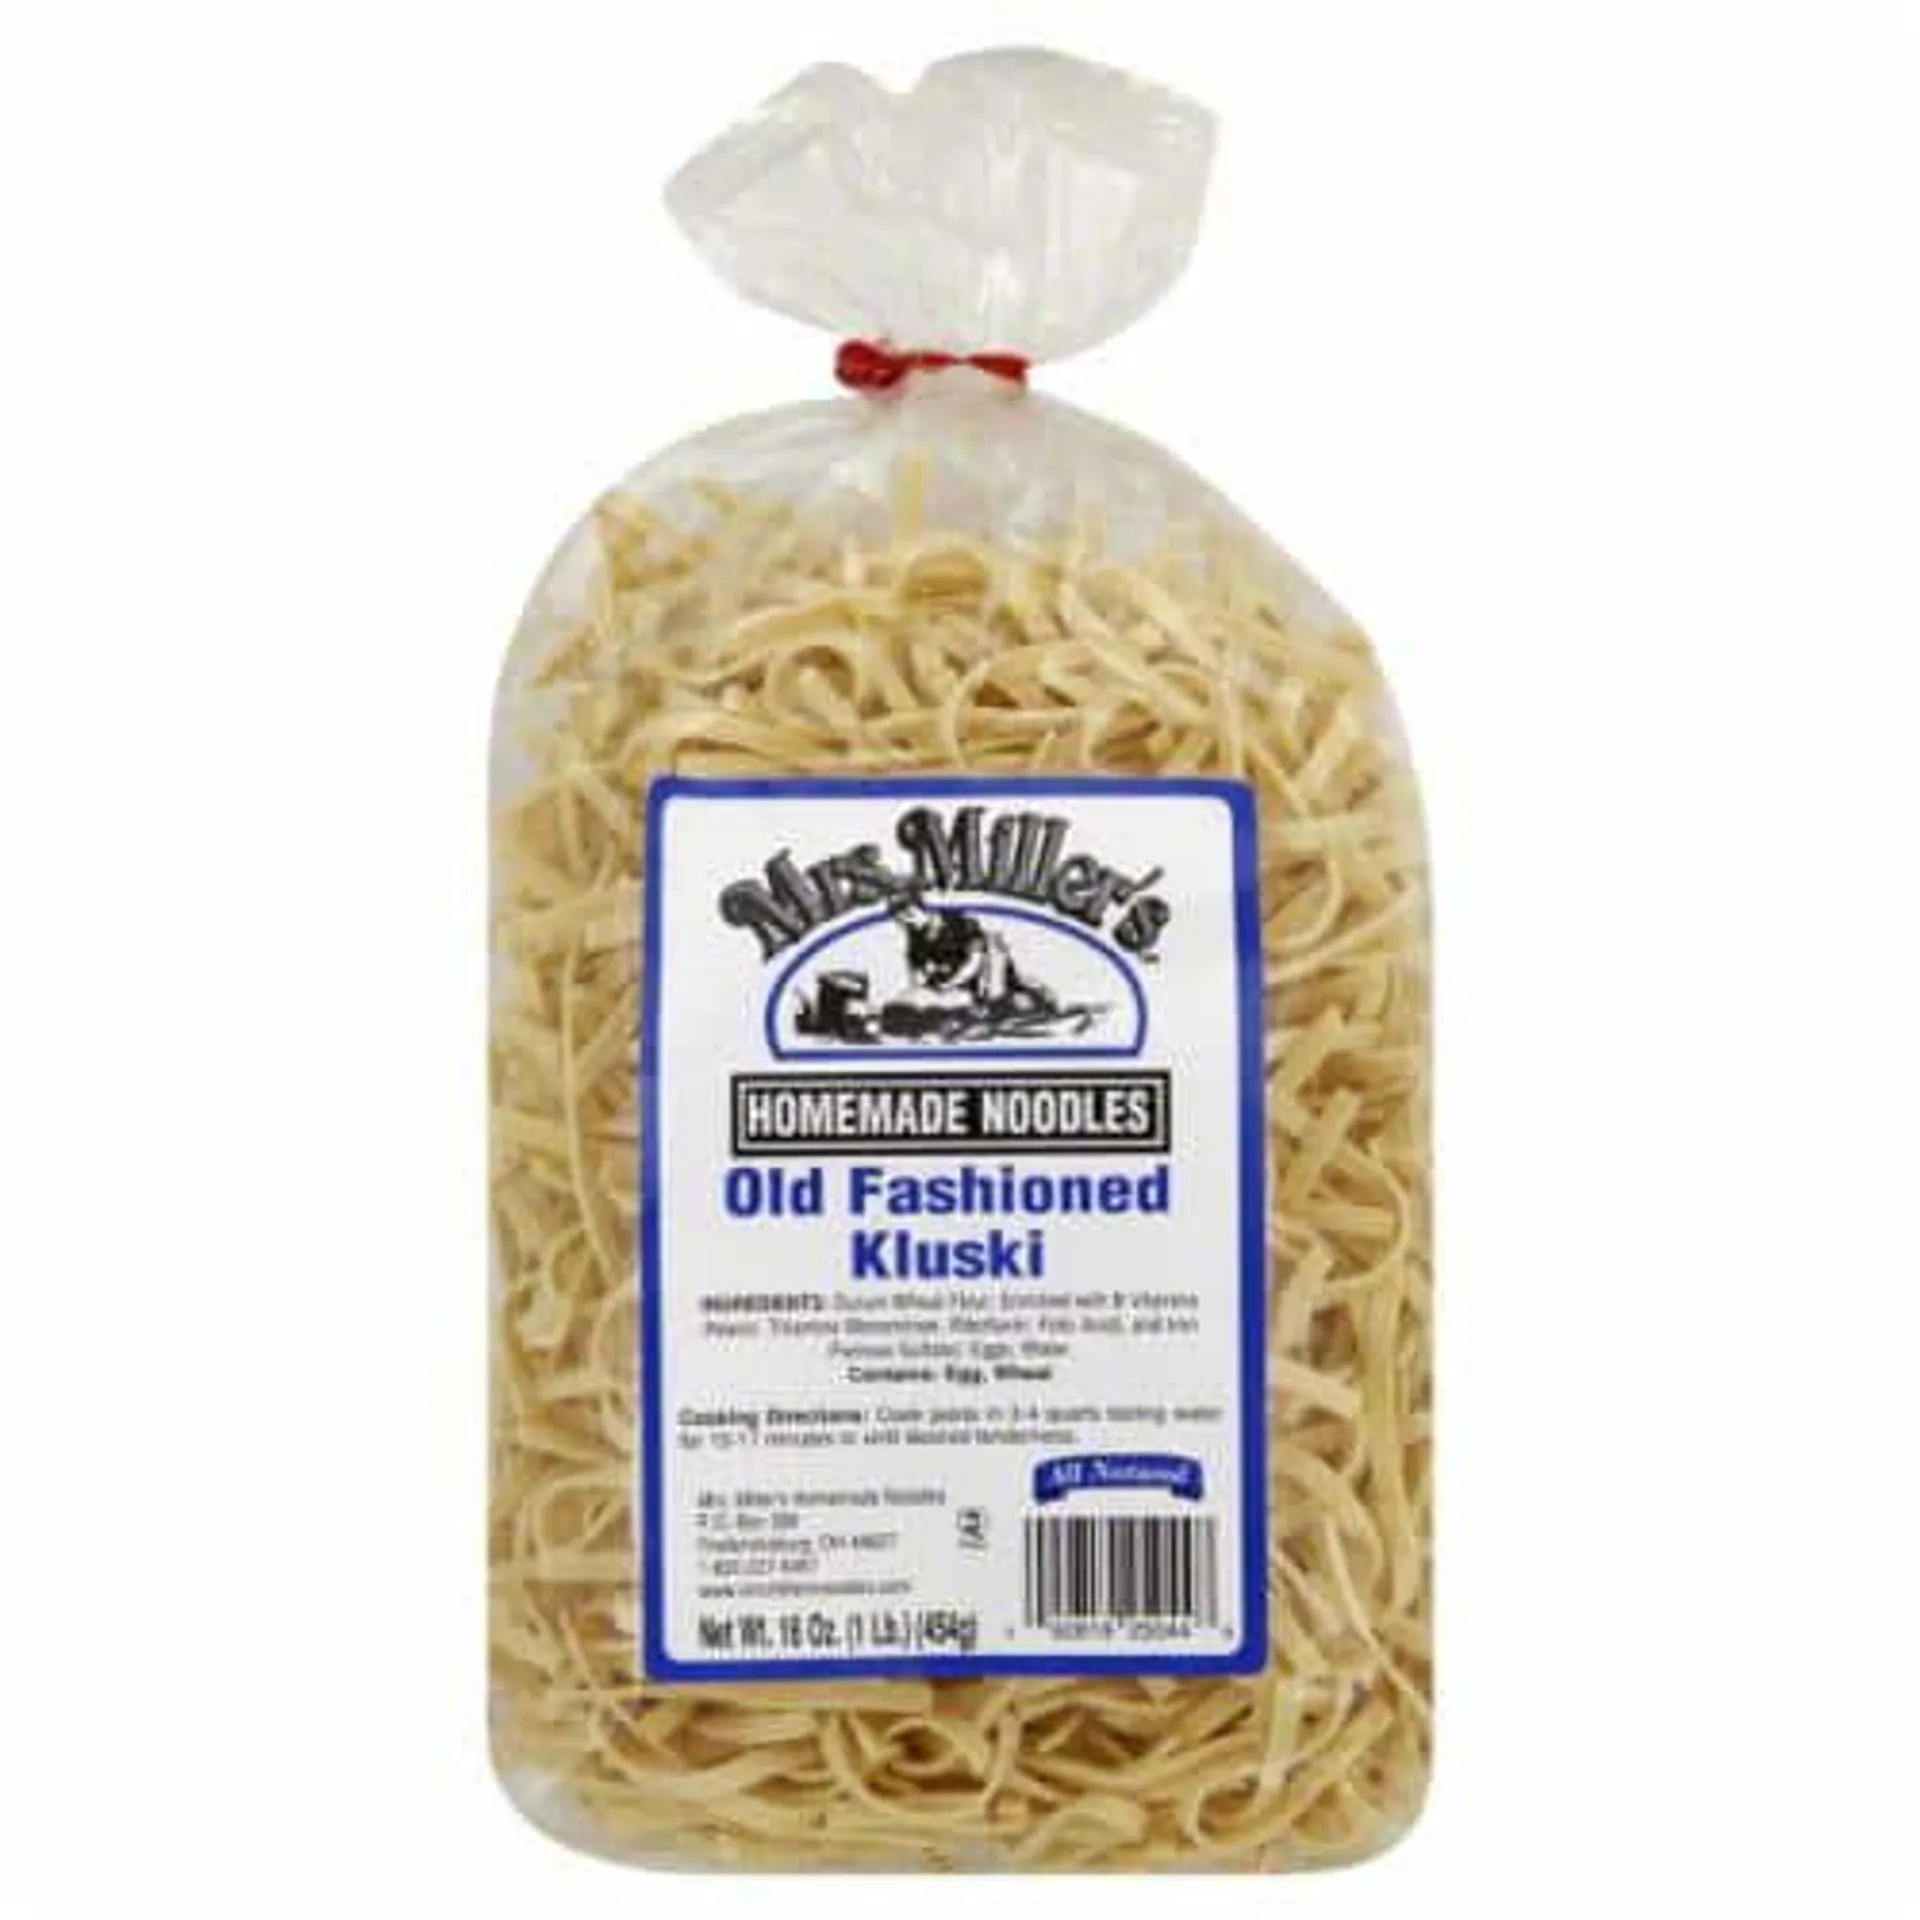 Mrs. Miller's® Old Fashioned Homemade Kluski Noodles